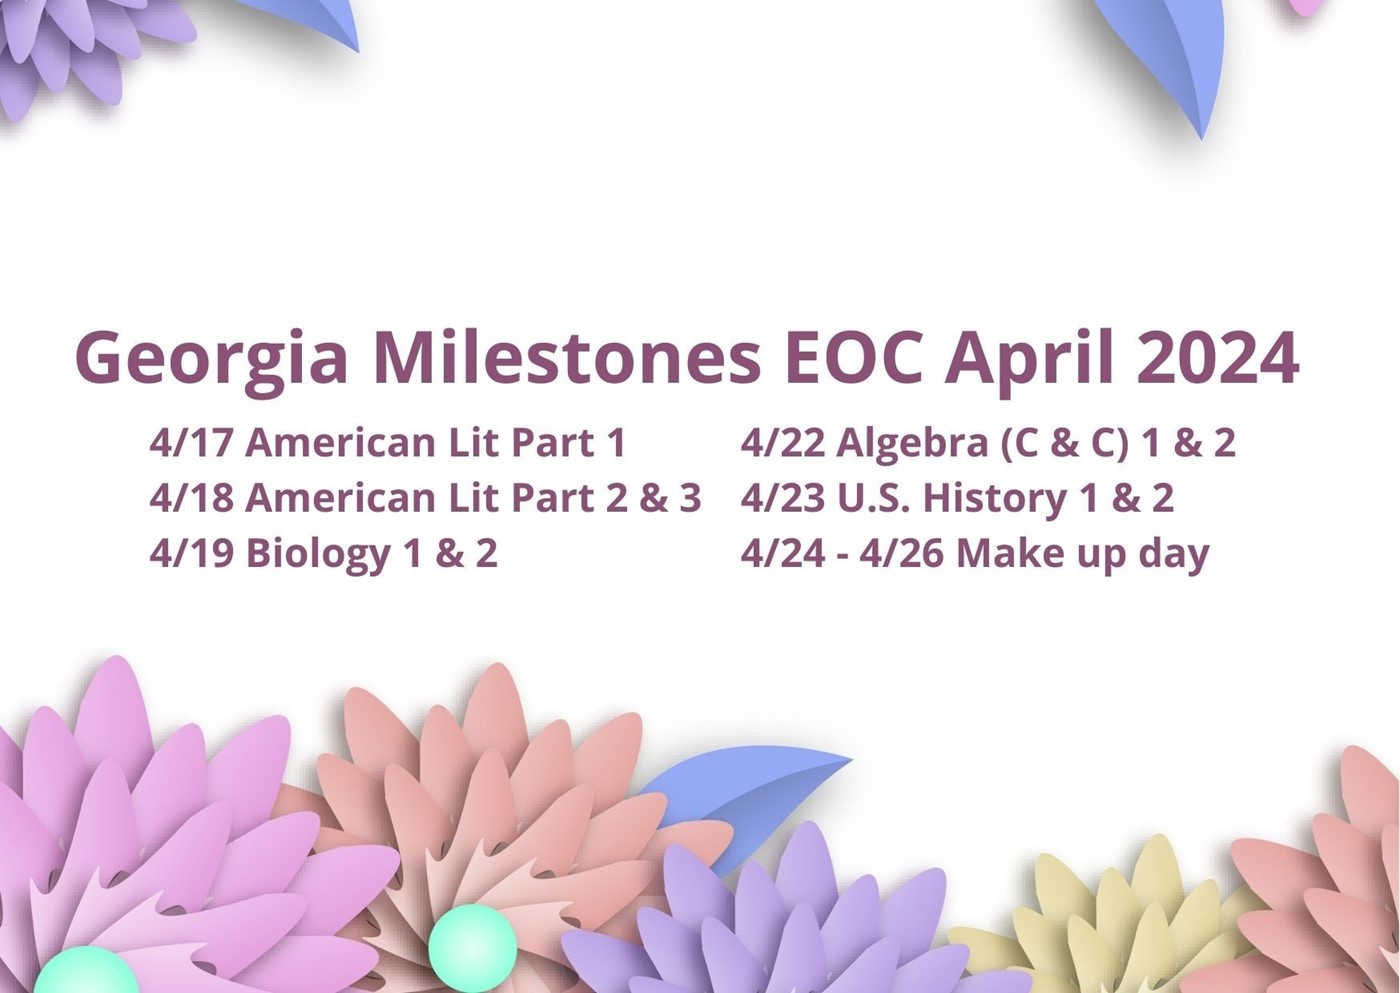 Georgia Milestones April 2024